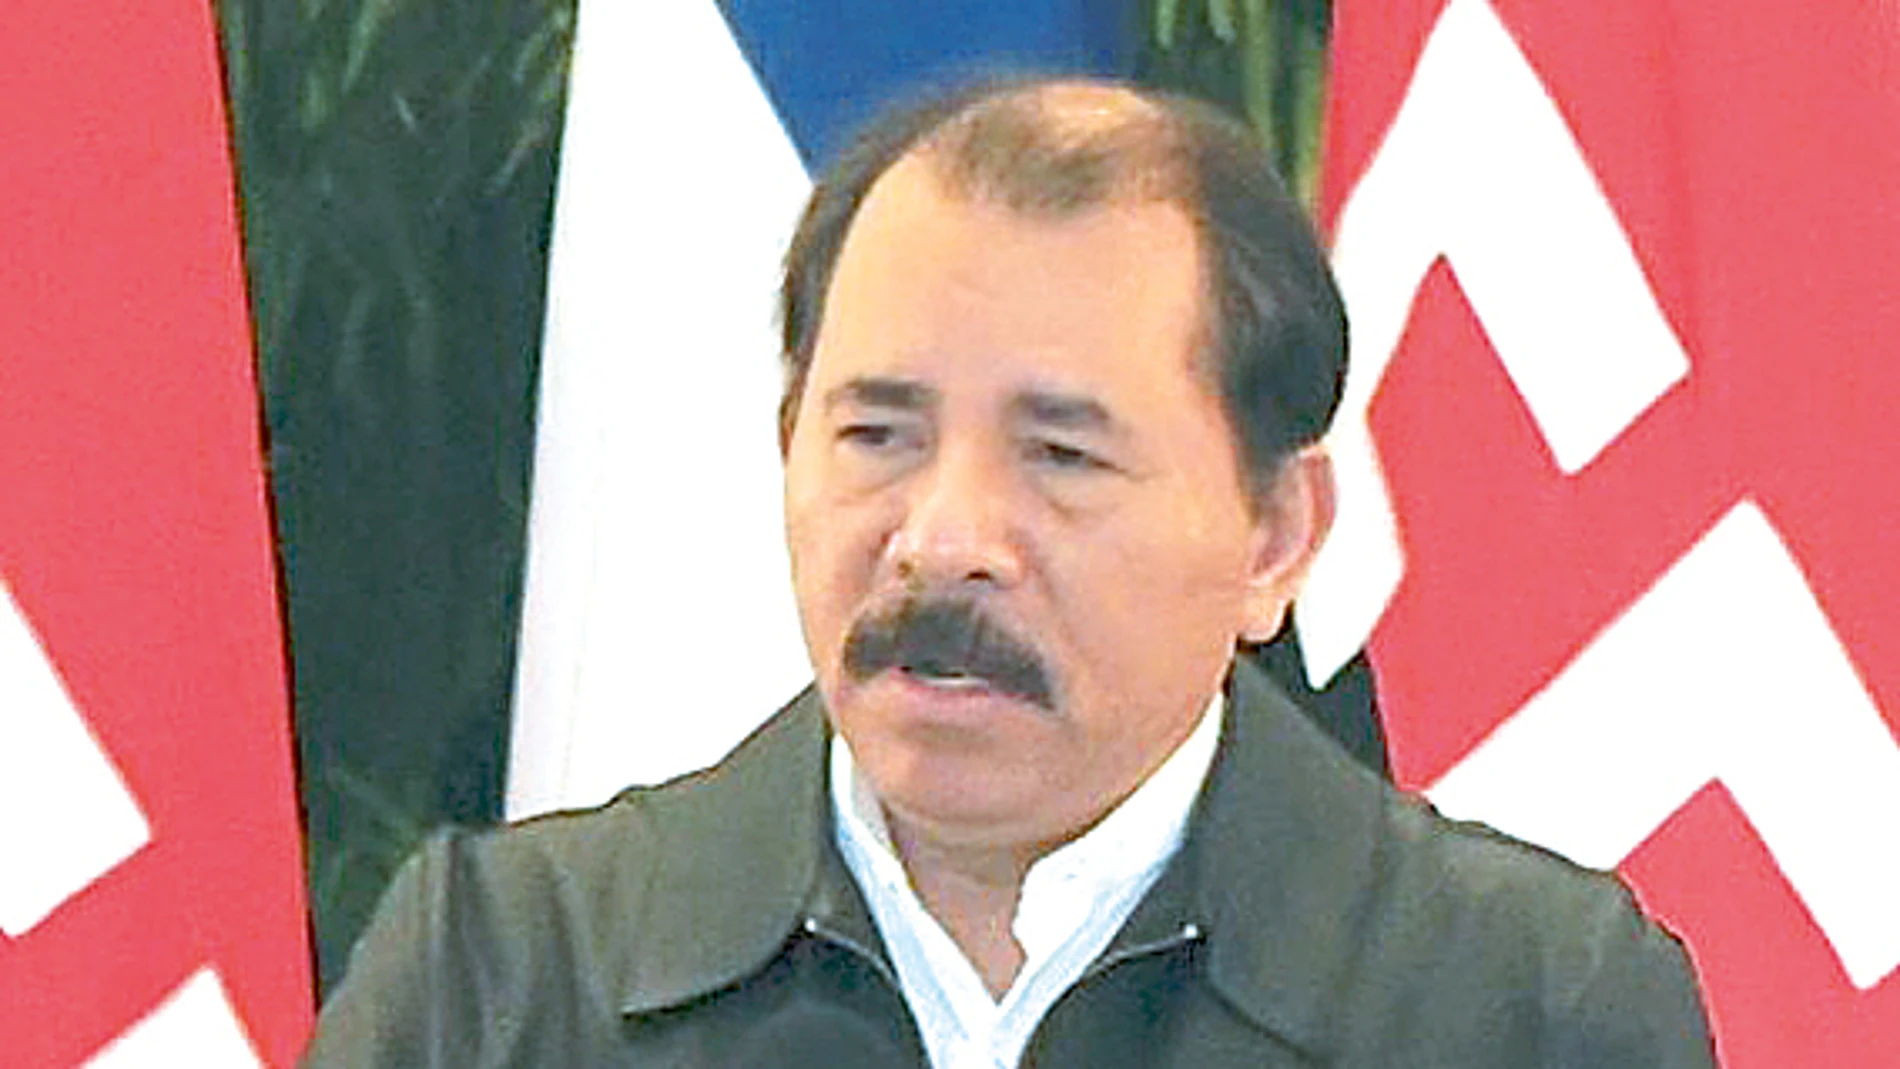 Caudillo sandinista. Daniel Ortega, el que fuera líder sandinista, mantiene grandes alianzas con las empresas privadas de Nicaragua